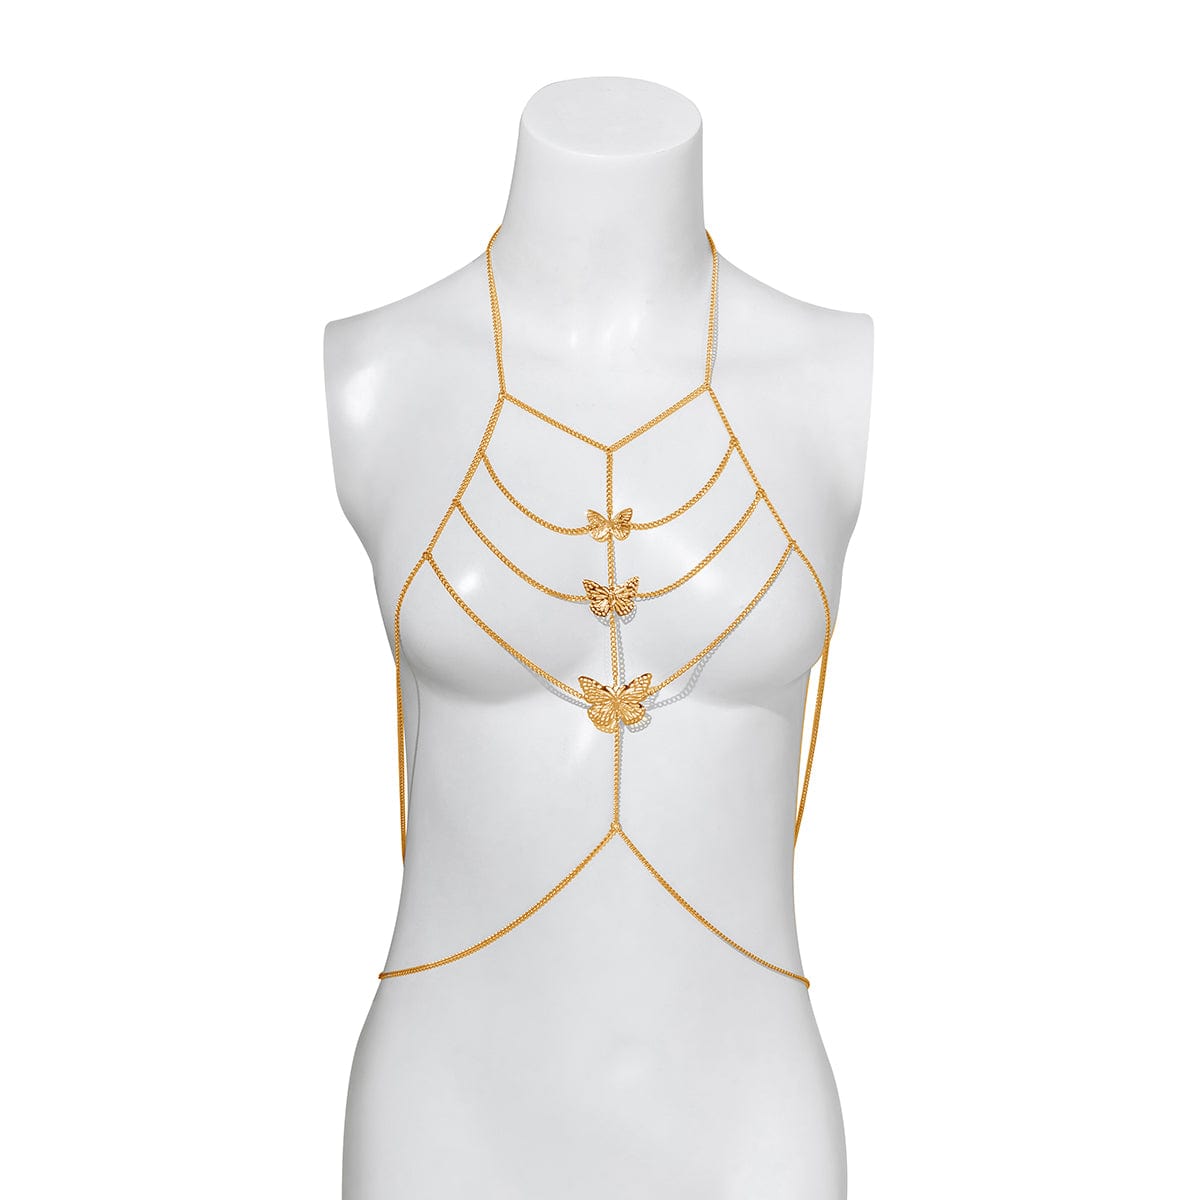 Body Chain Bra Fashion Body Chain Necklace Bra Chain Body Jewelry